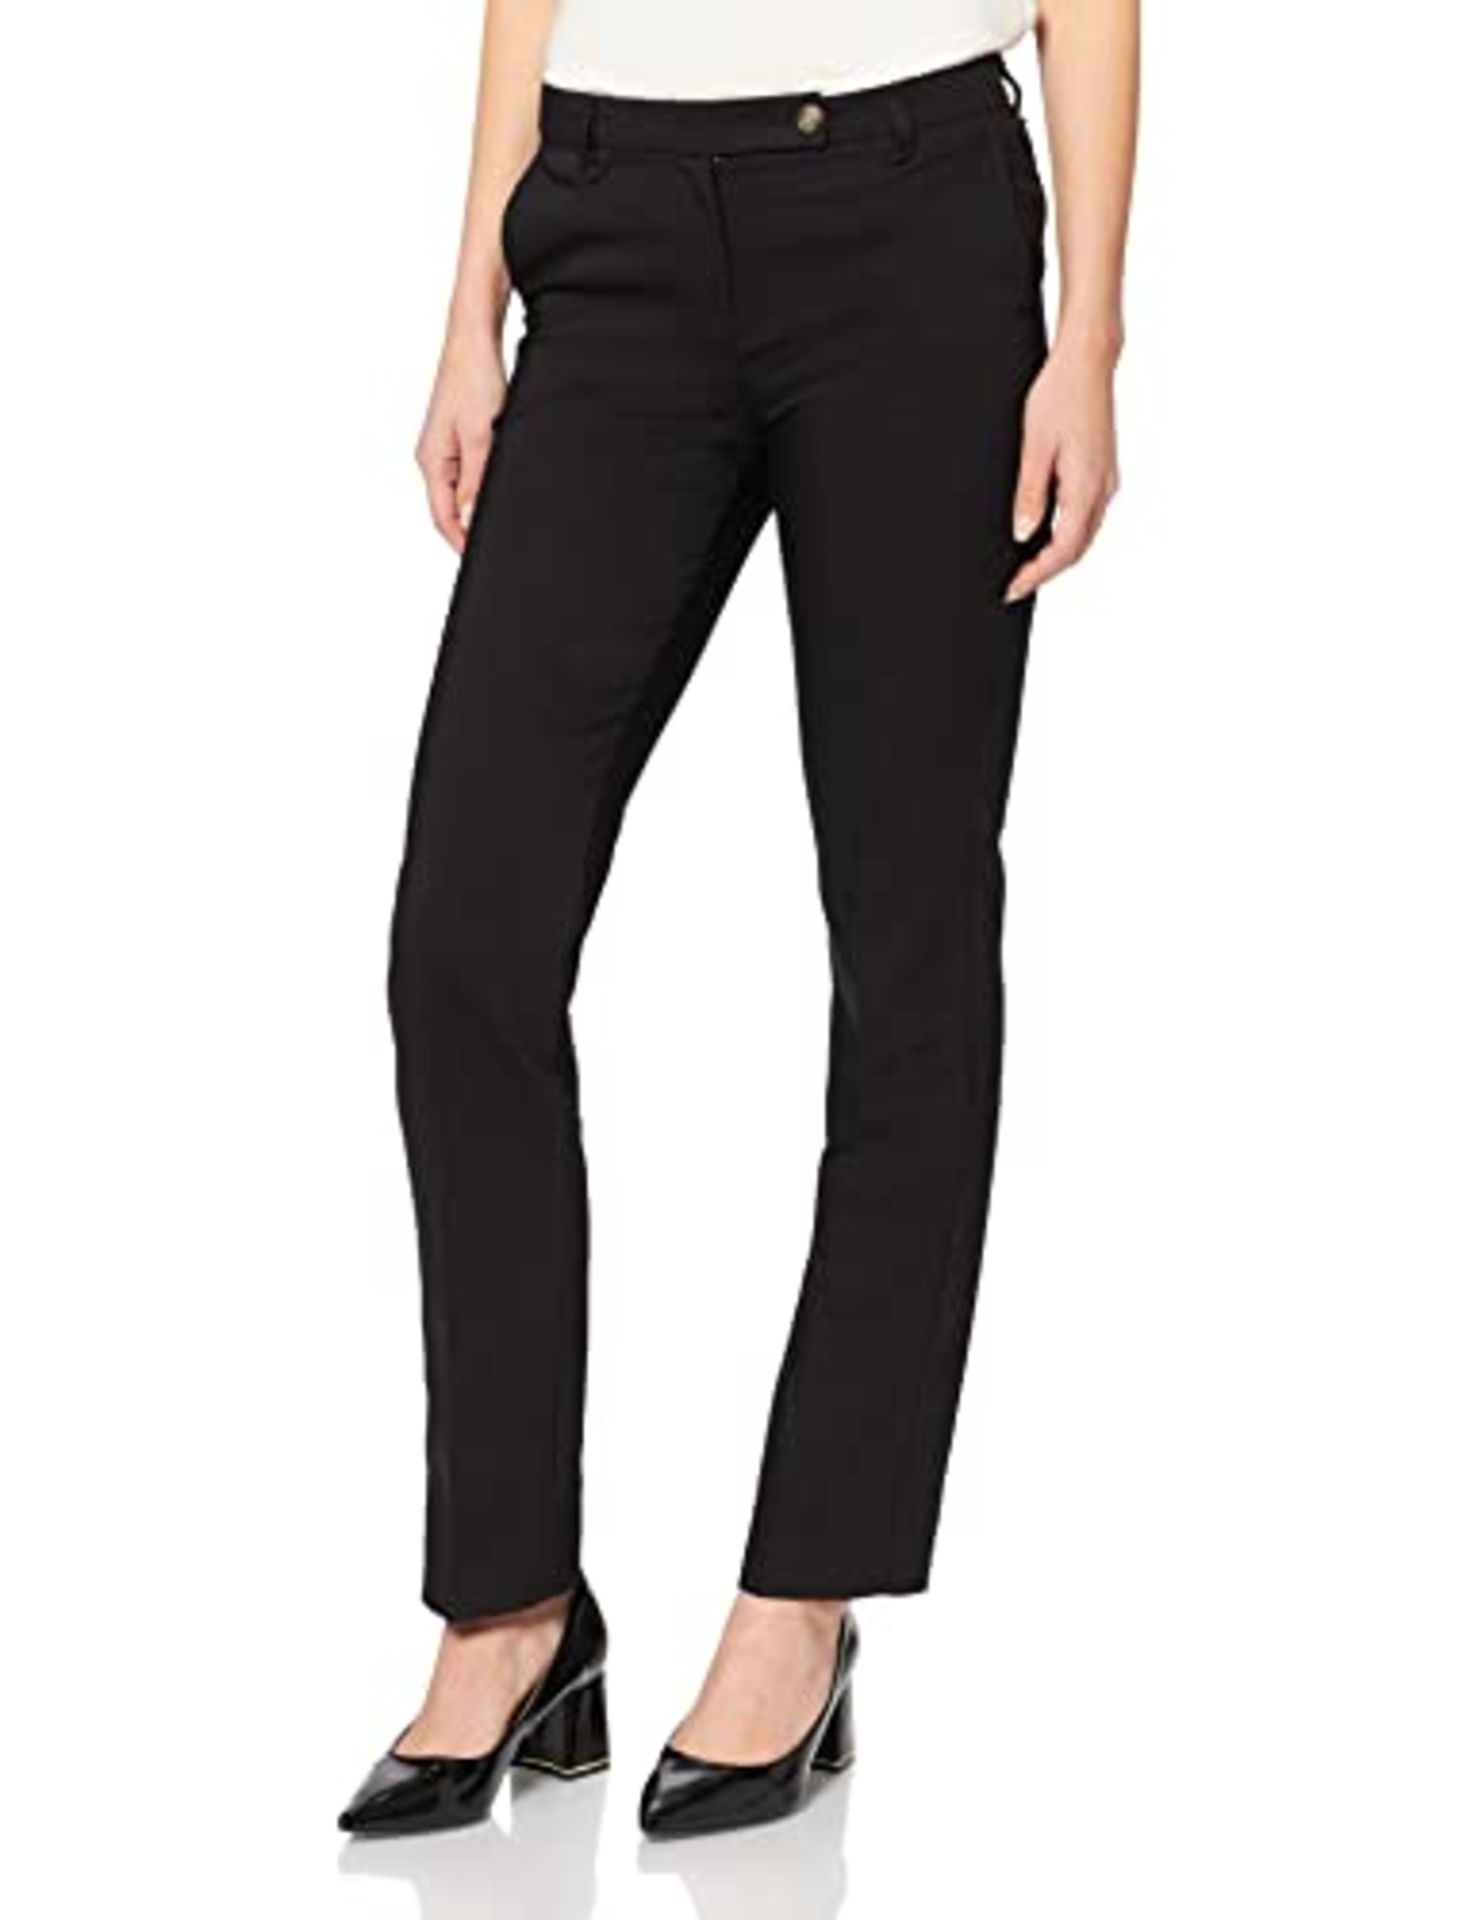 ESPRIT Women's 101ee1b329 Pants, Black, 8